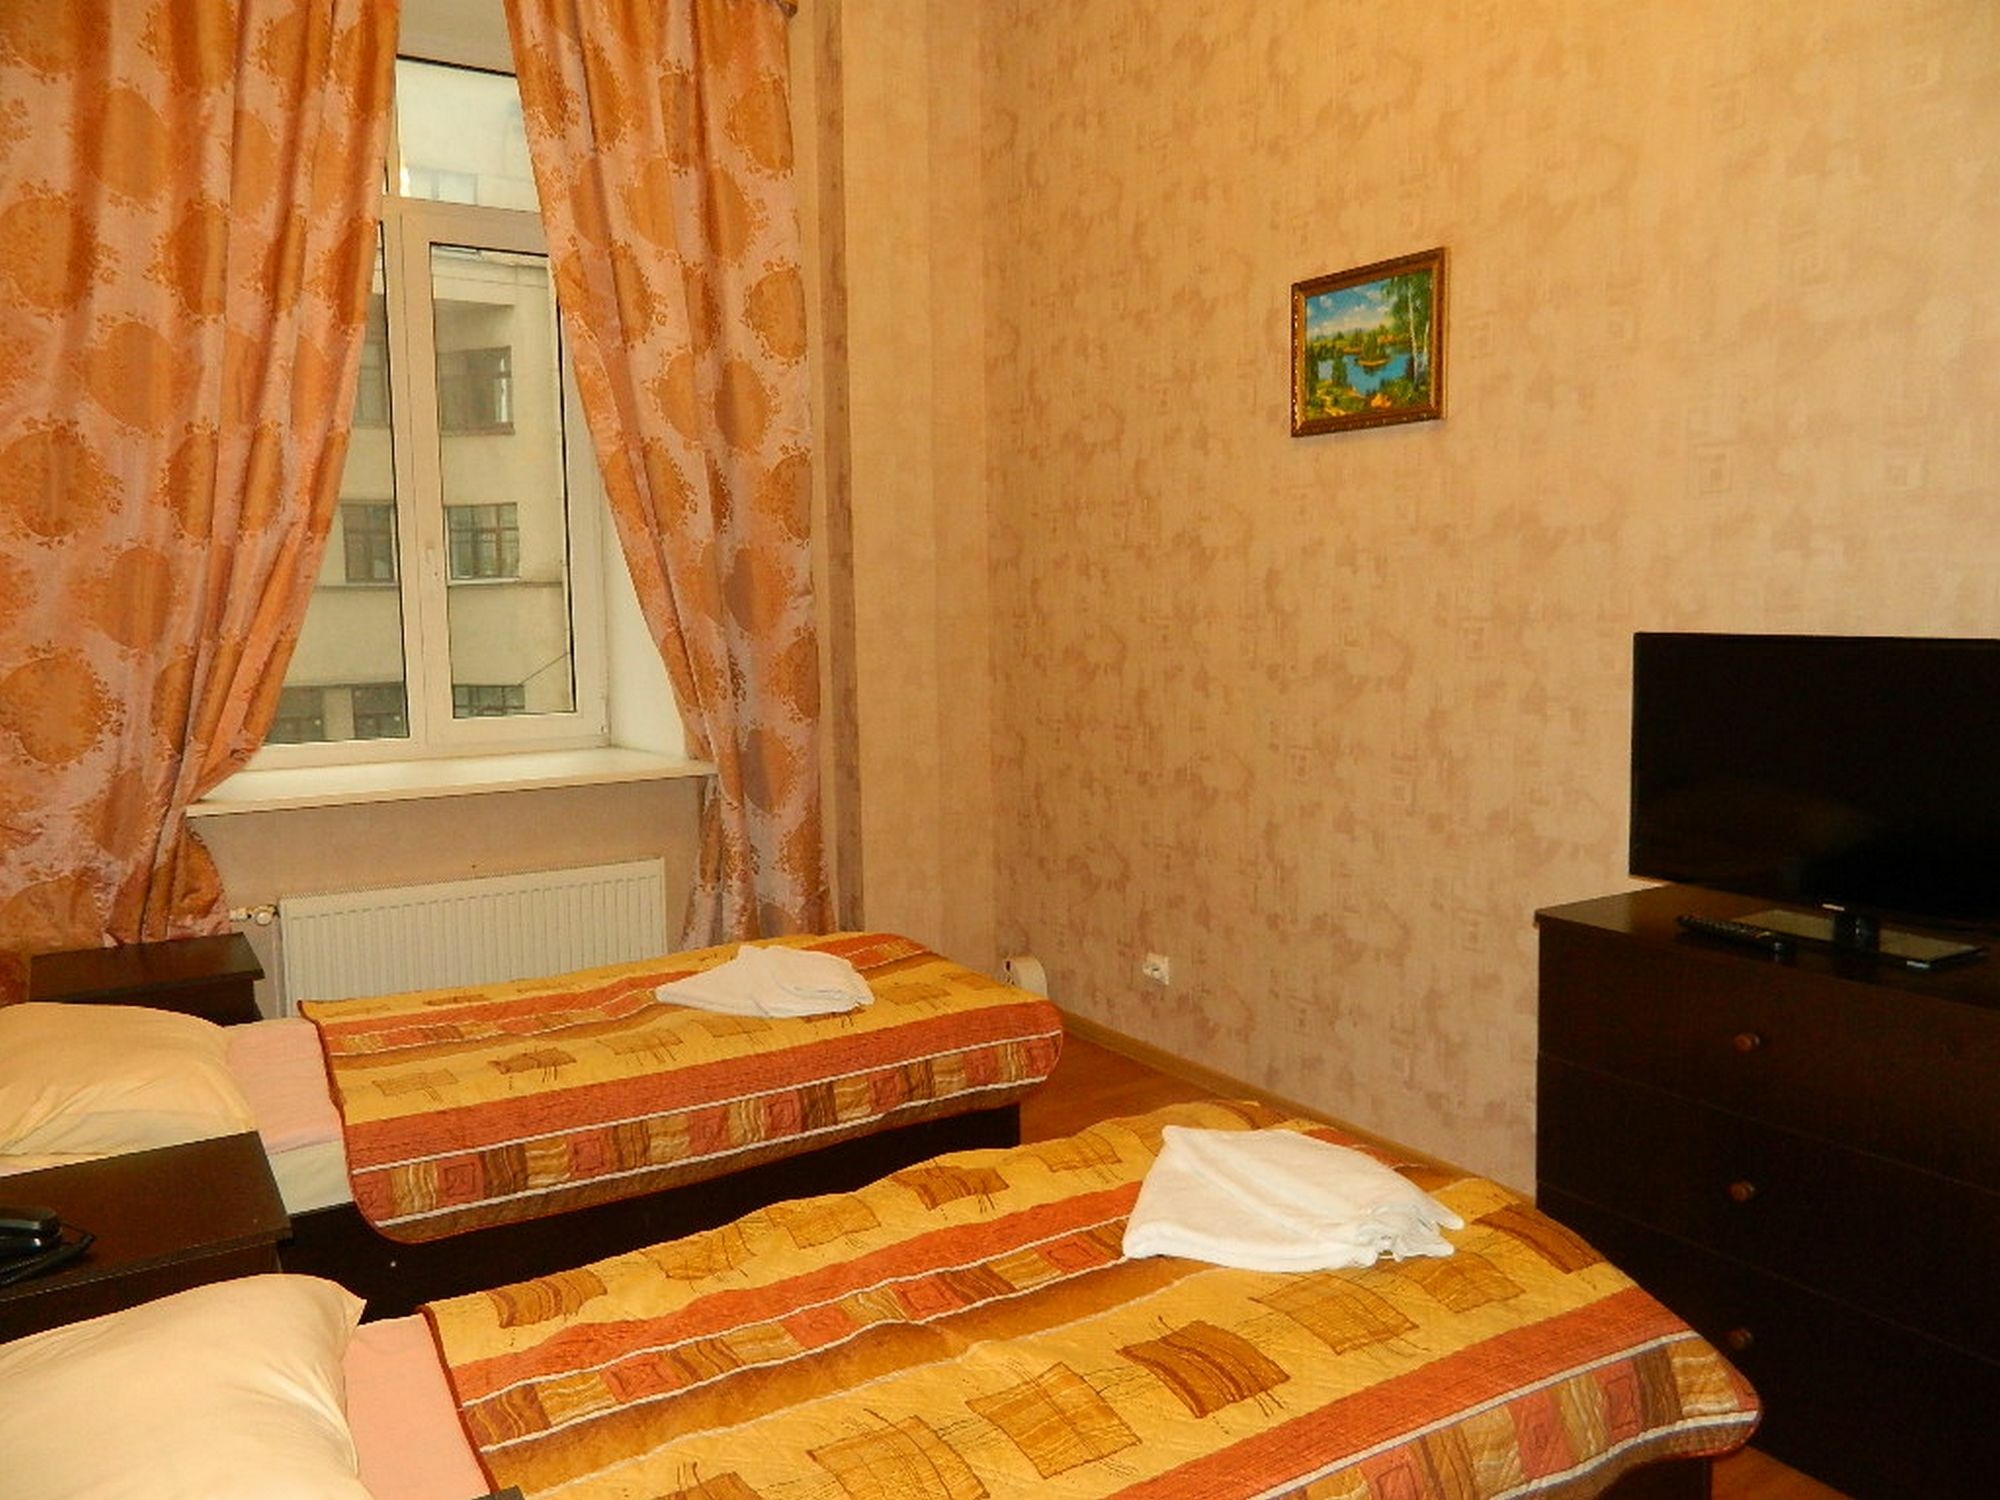 Hotel Nevsky 111 상트페테르부르크 외부 사진